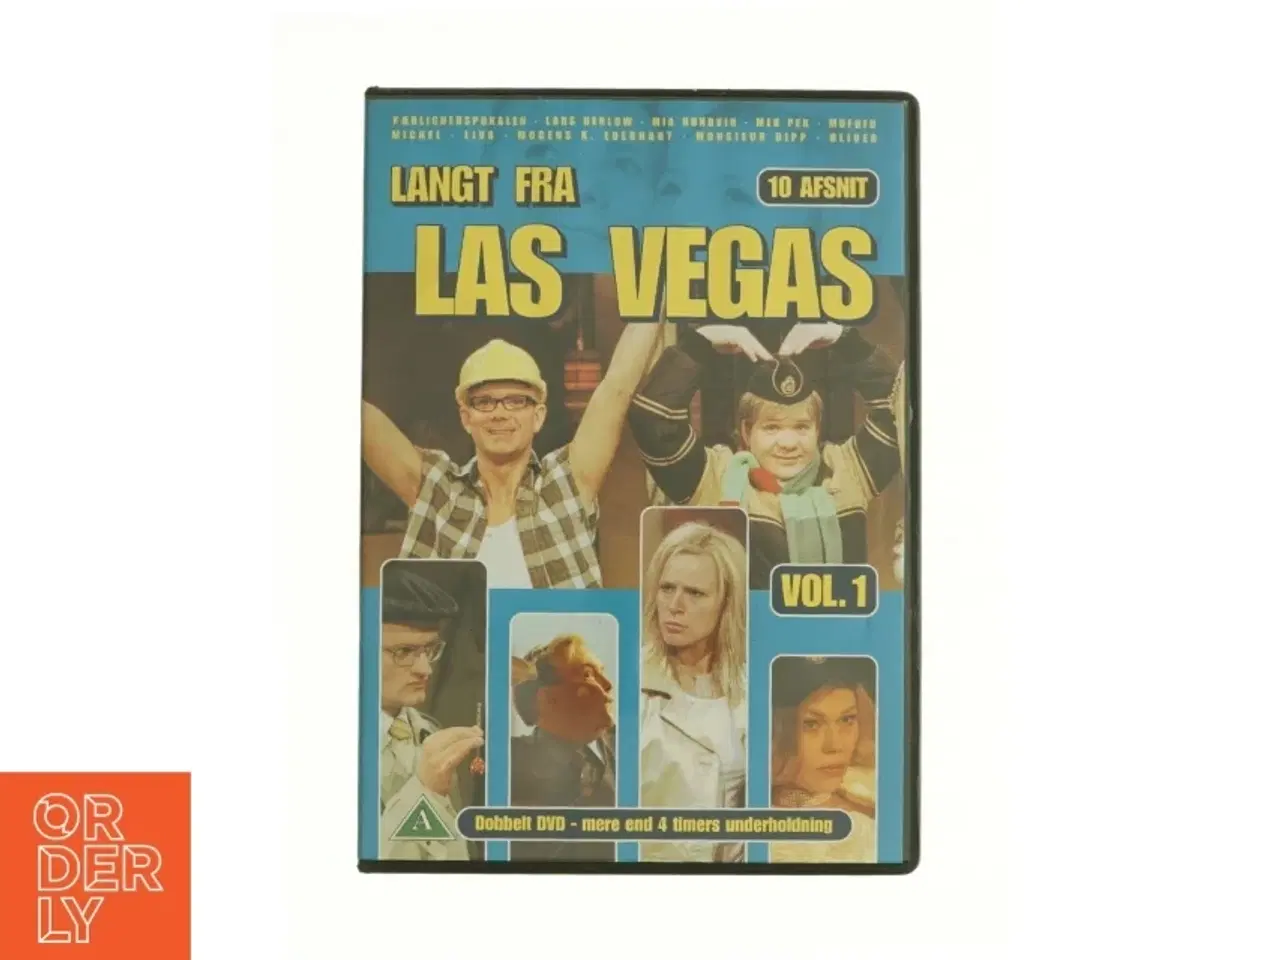 Billede 1 - Langt fra Las Vegas Vol. 1 fra DVD